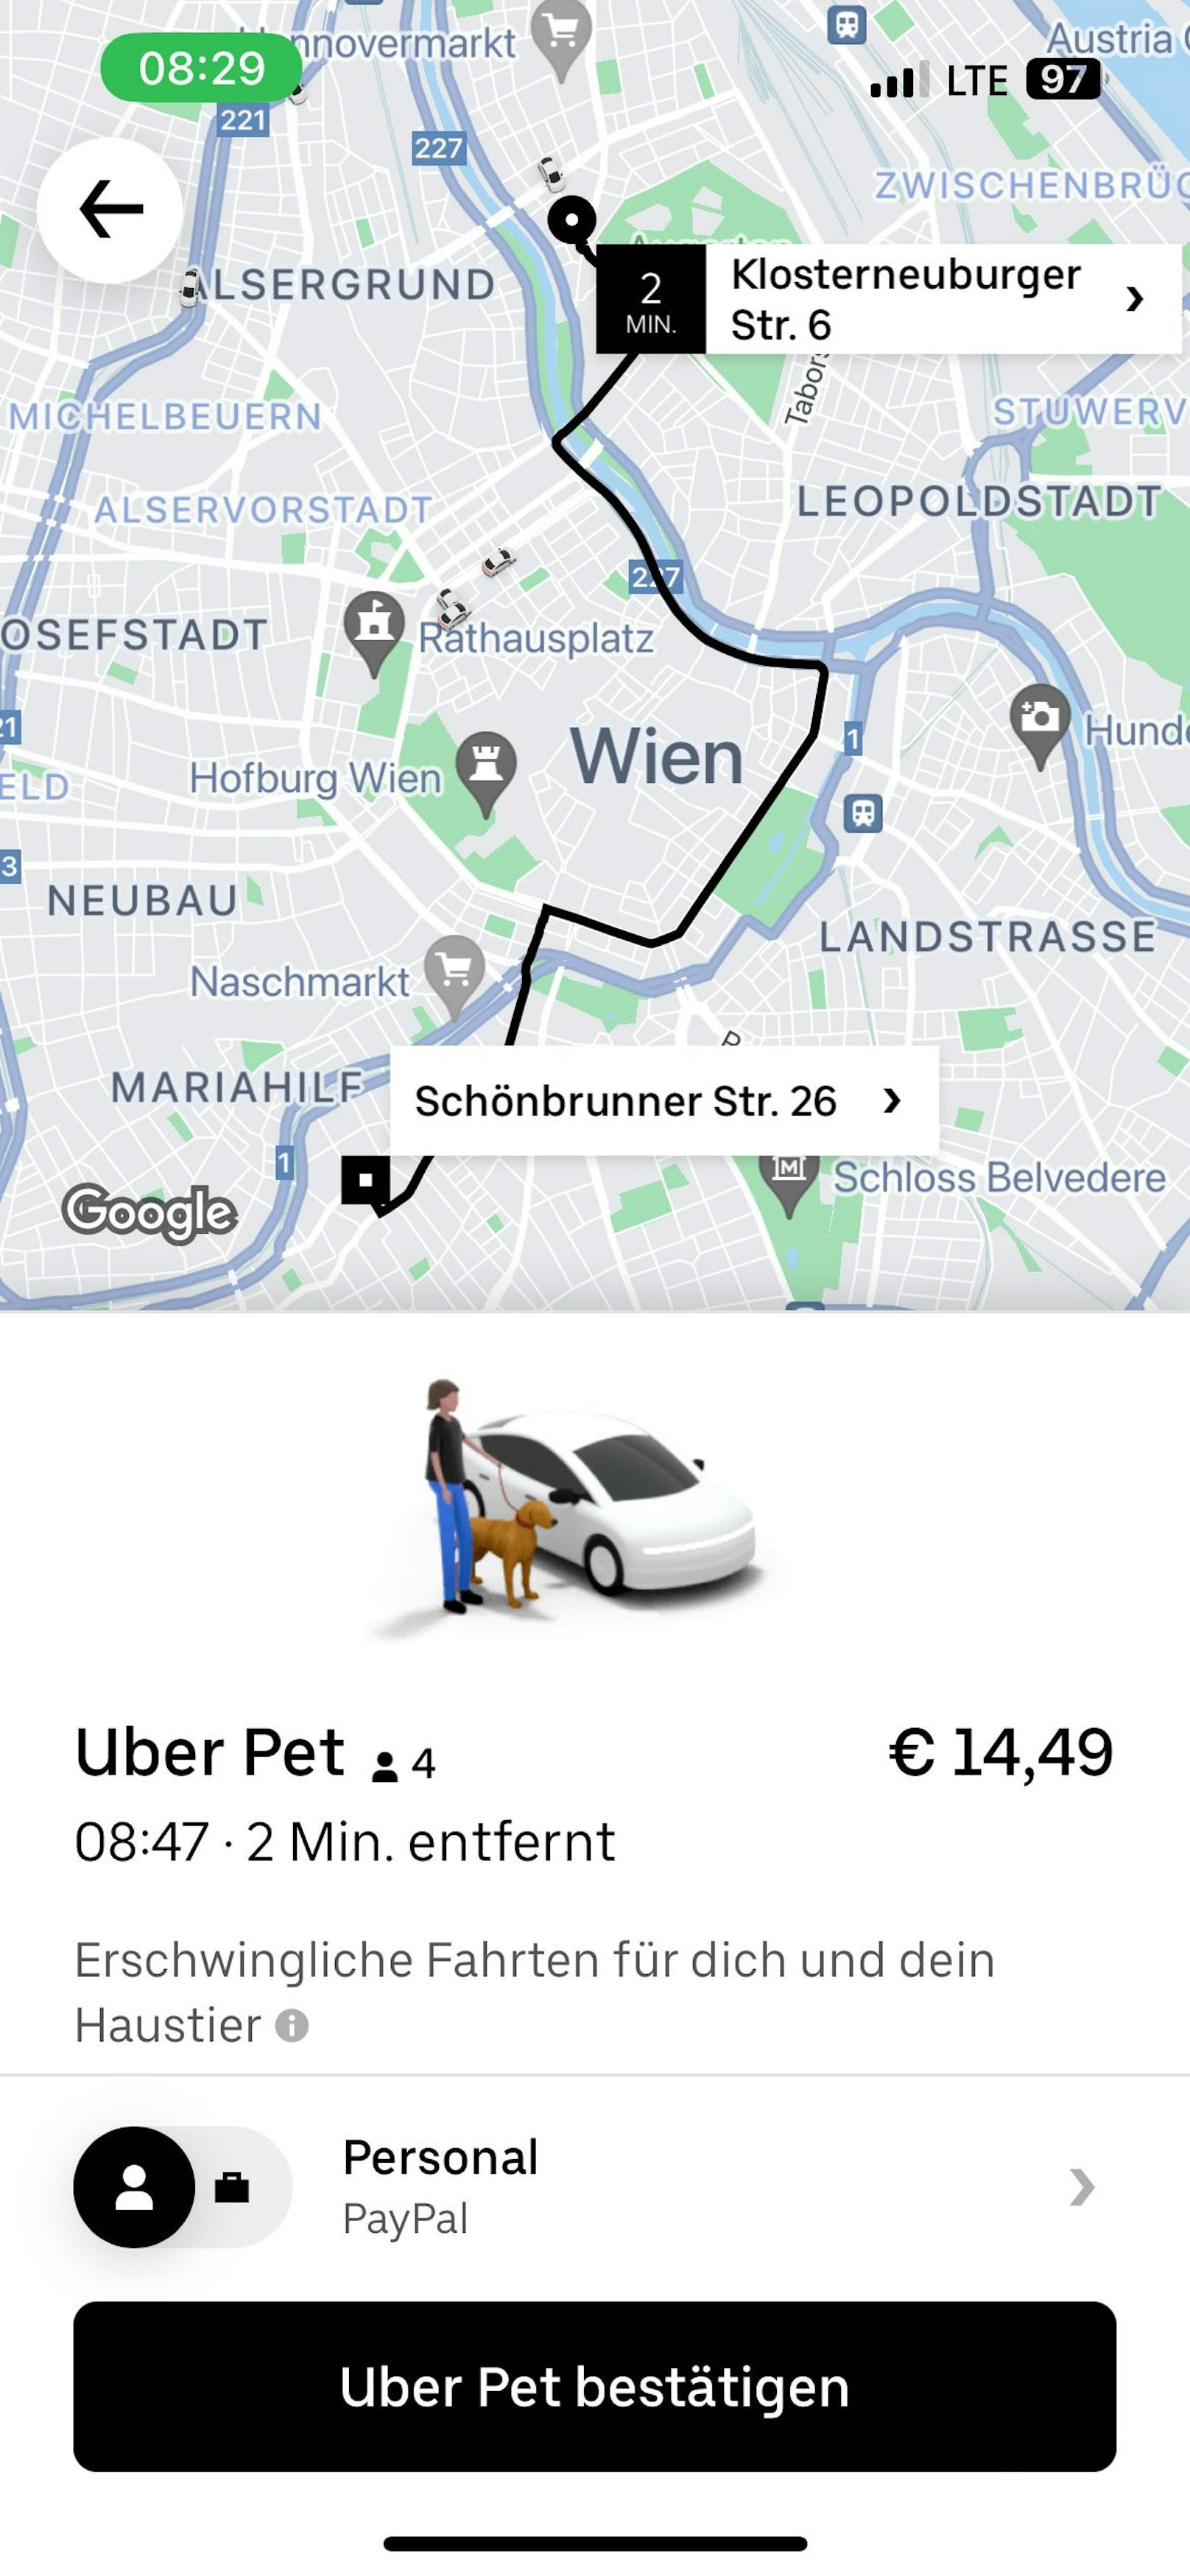 Jetzt in ganz Österreich - Uber Pet startet in Graz, Innsbruck und Salzburg.